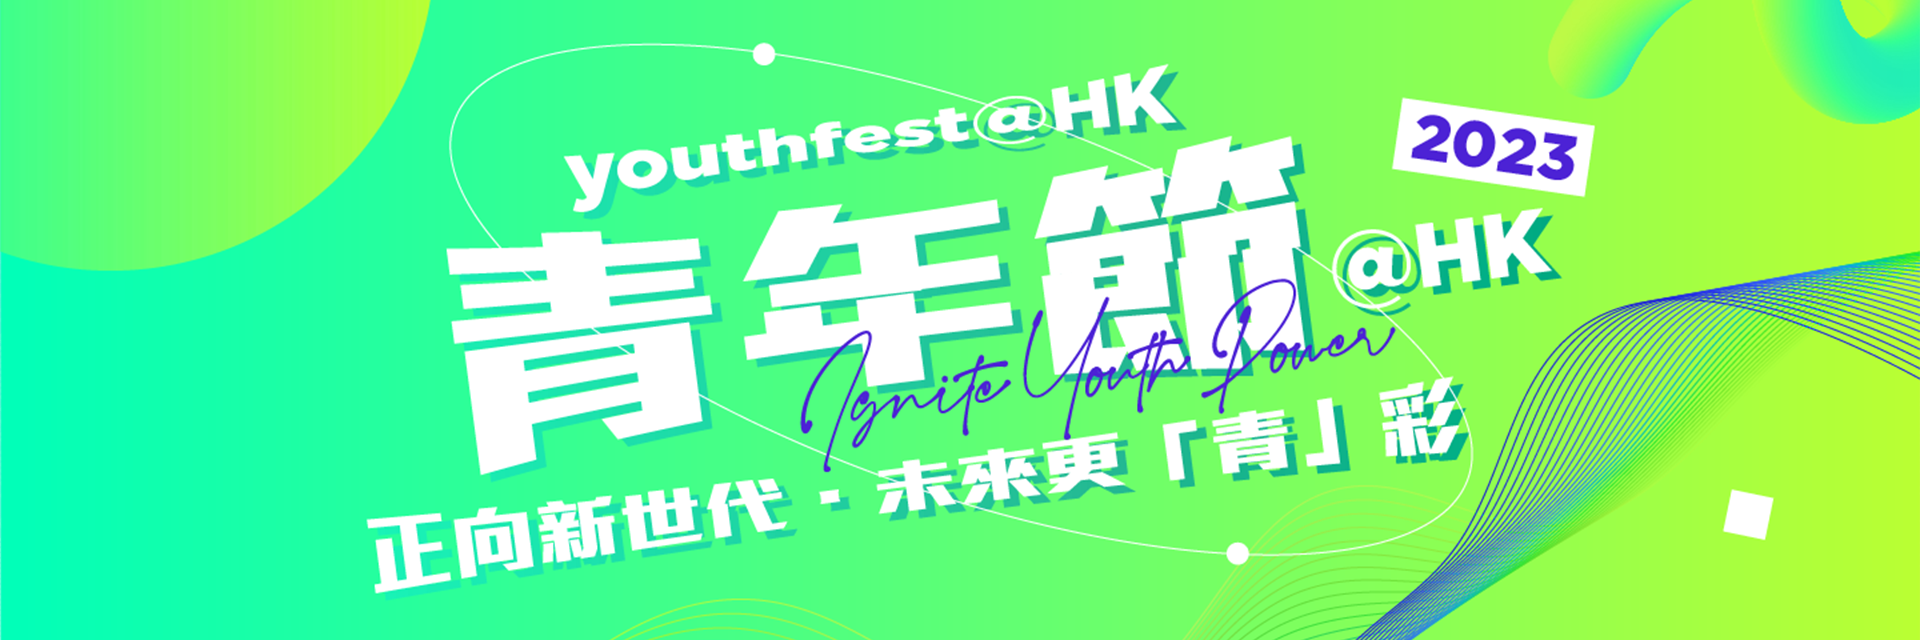 YouthFest@HK